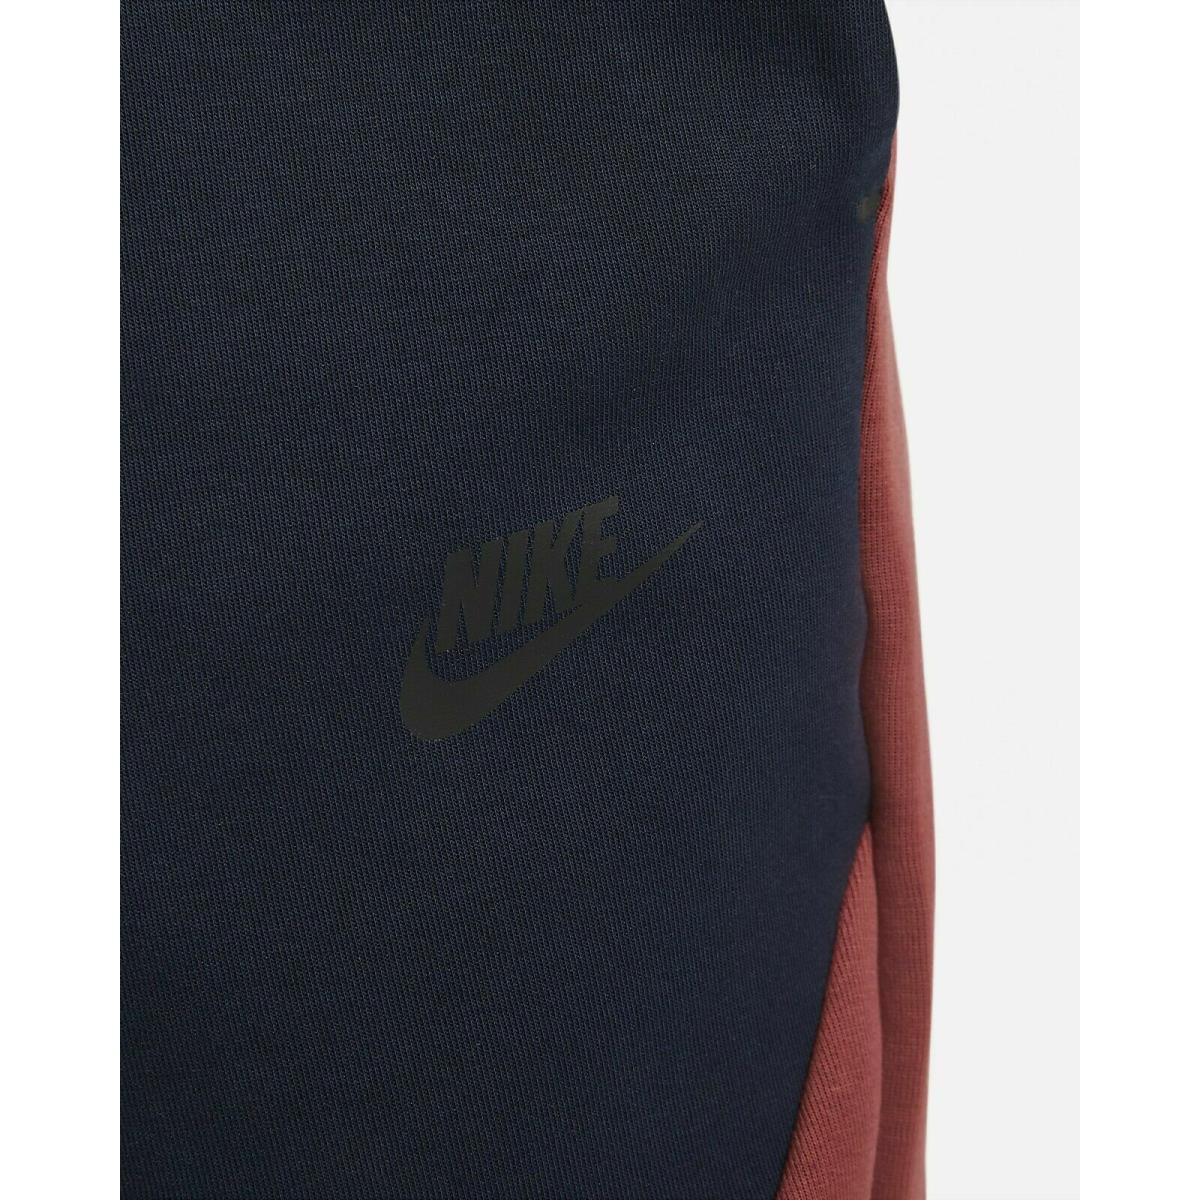 Nike clothing  - Cedar, Obsidian 3